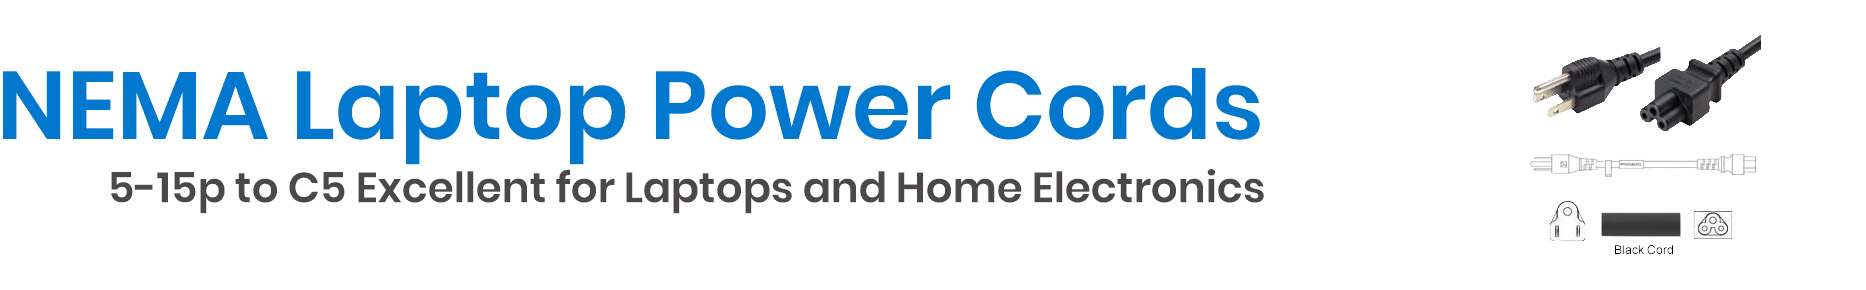 Shop Laptop Power Cords NEMA 5-15p to C5 - Cables.com